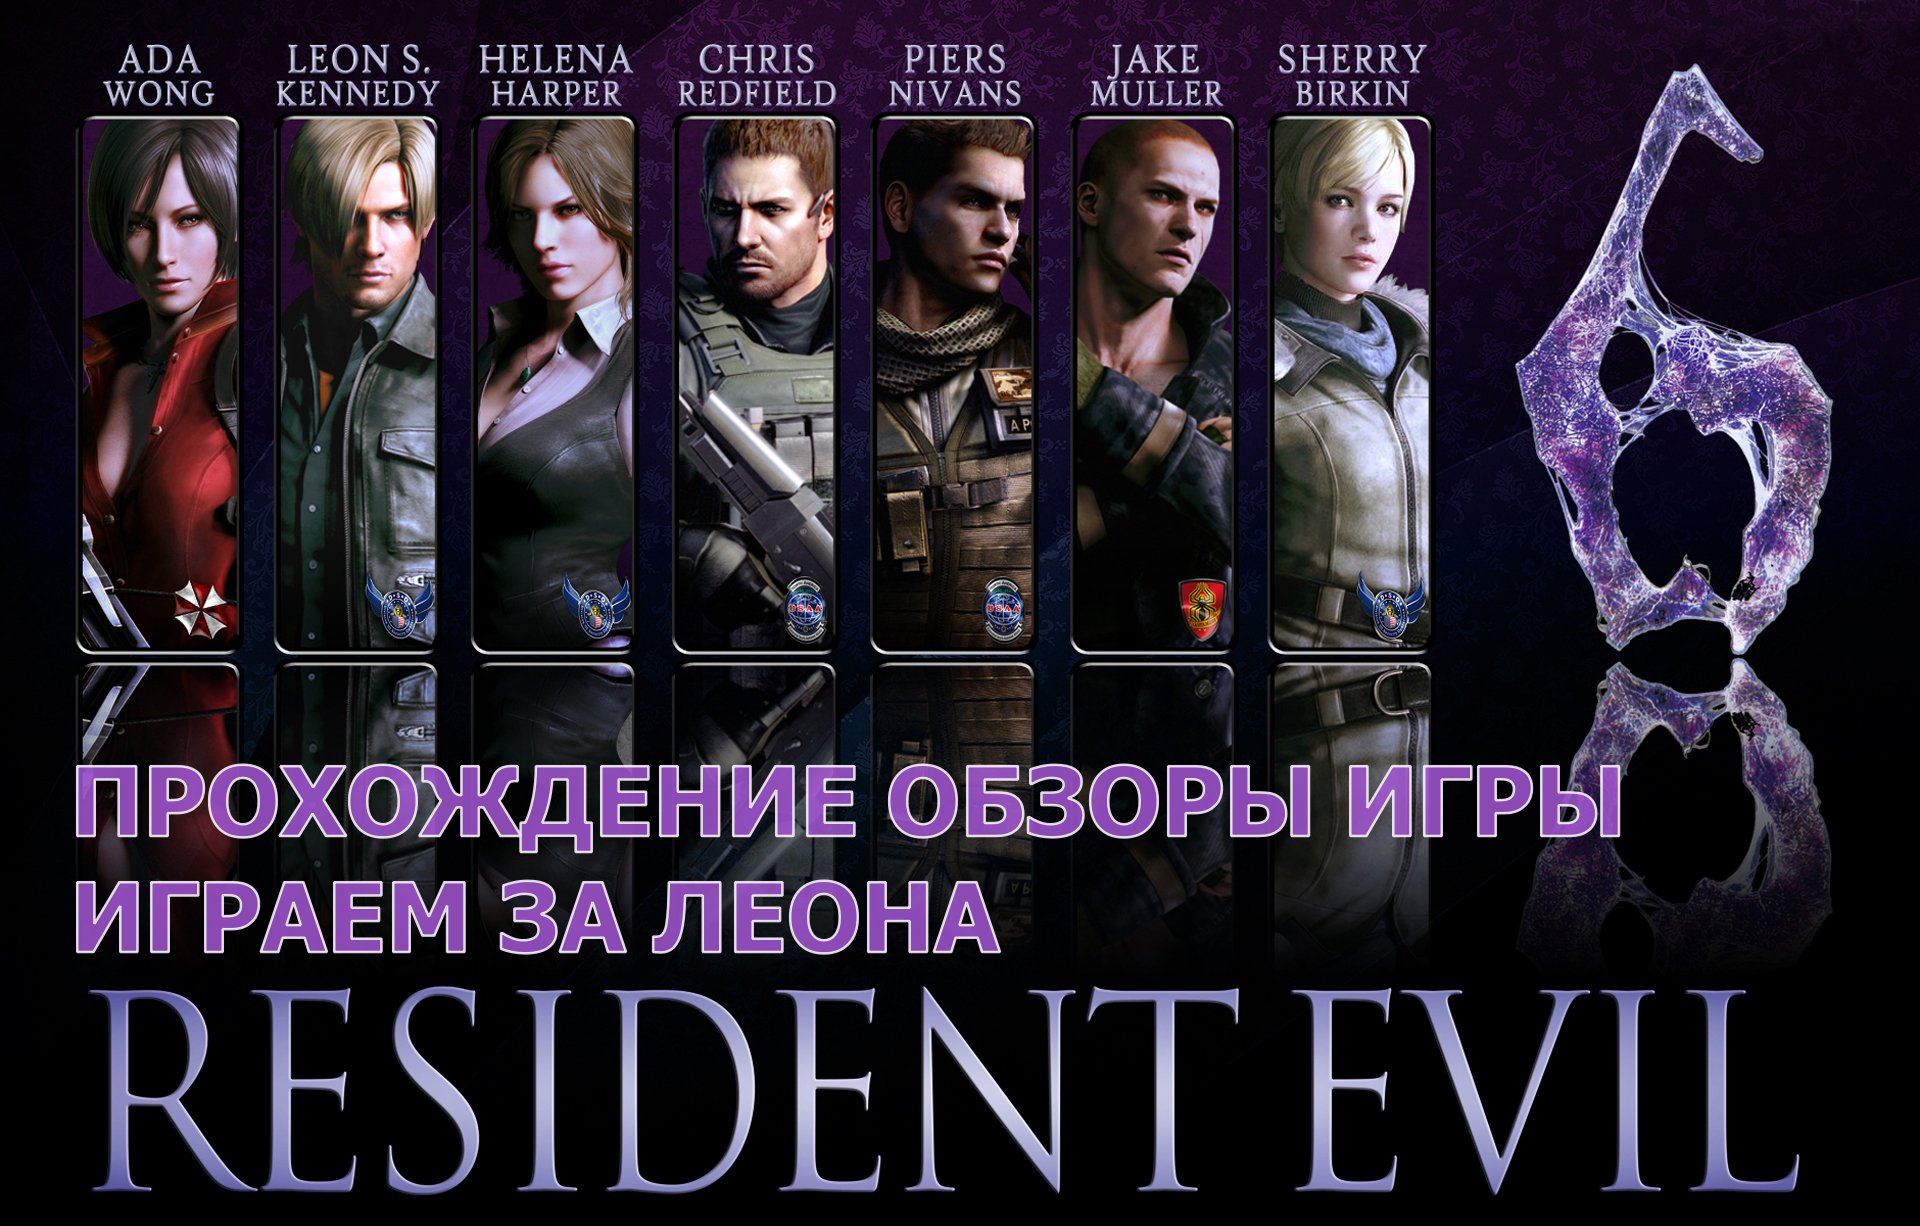 Прохождение обзоры игры - Resident Evil 6 за Леона играем # 17. PC - HD Full 1080p.